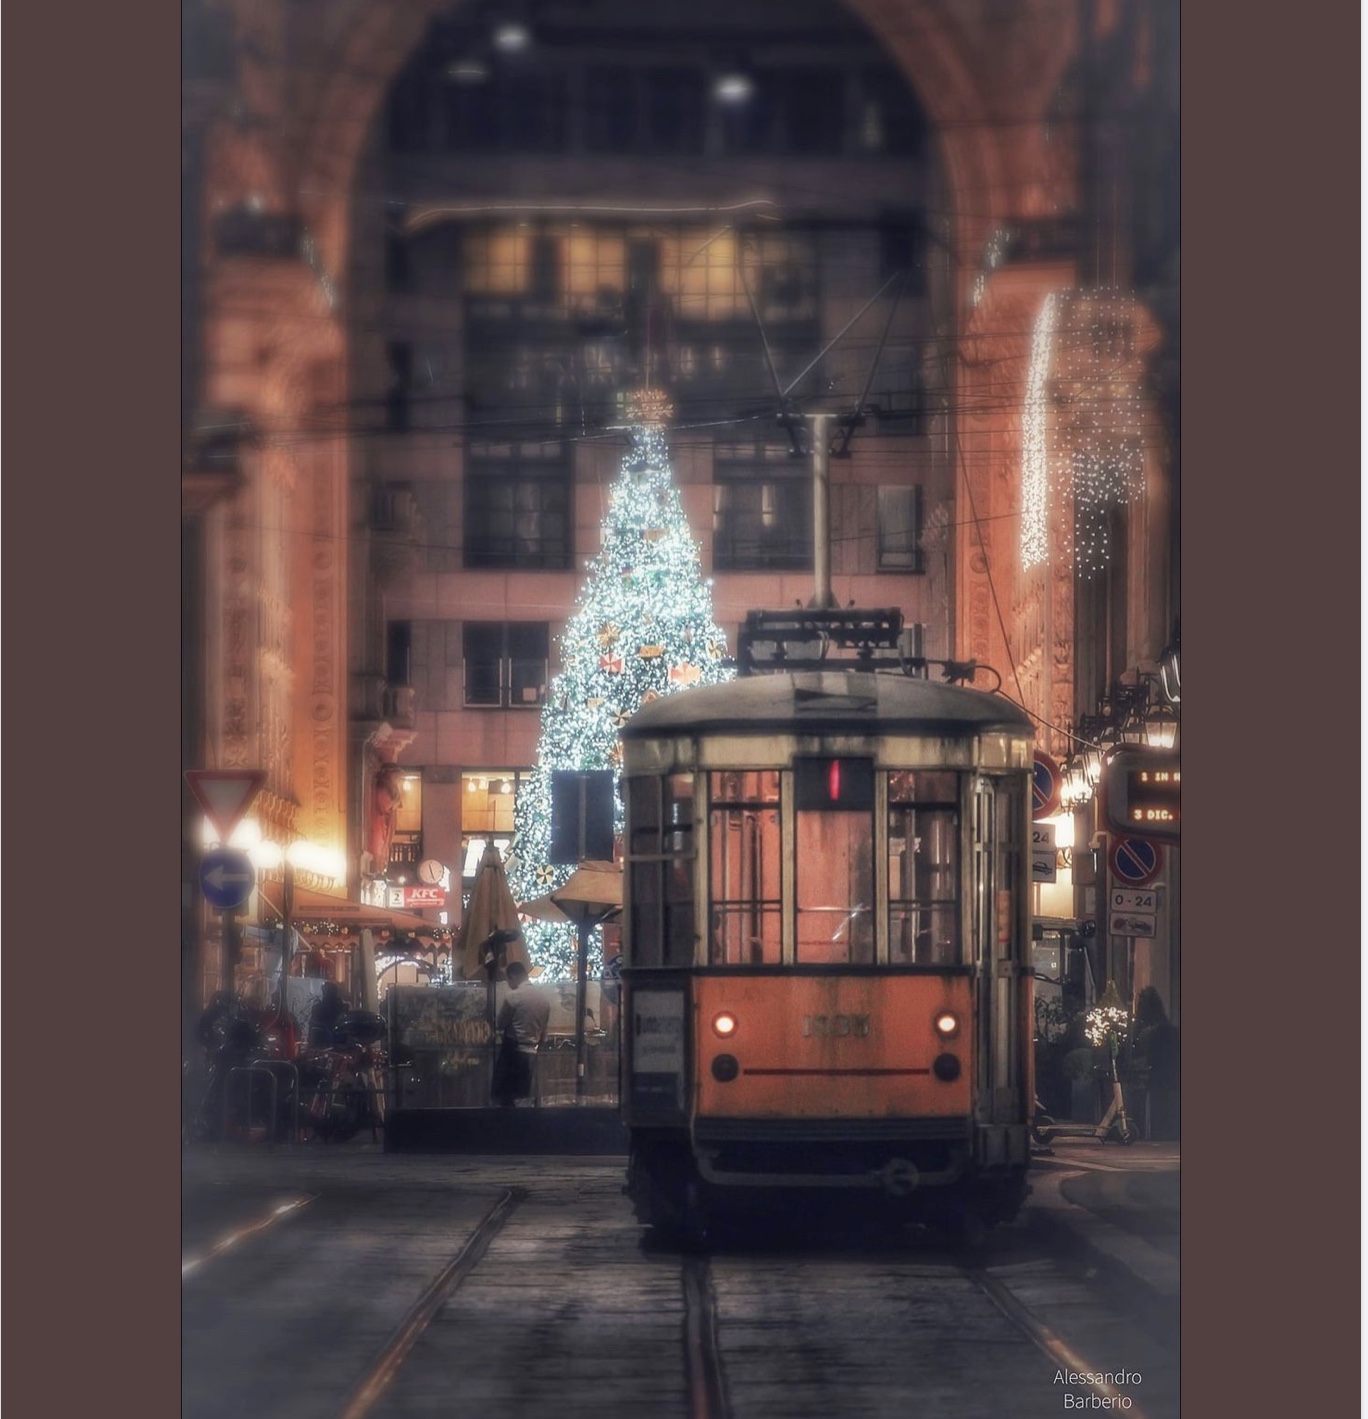 Il tram numero 1 e il mio amore per Milano